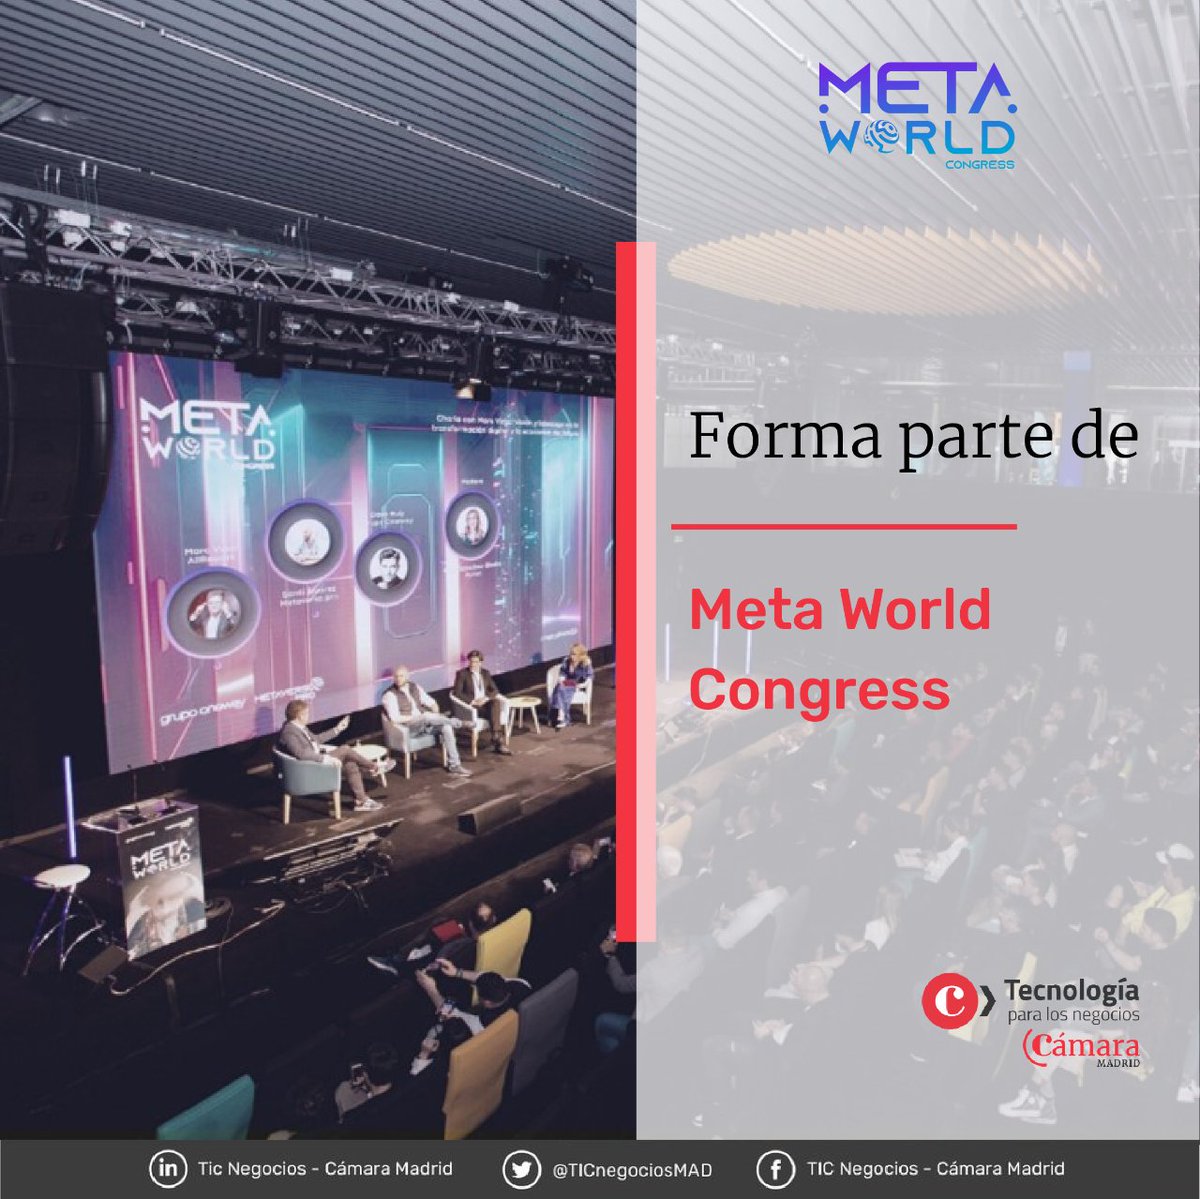 Explora el futuro tecnológico en Madrid en el #MetaWorldCongress los días 10 y 11 abril. Únete al evento líder en innovación y gracias a @TICnegociosMAD consigue una de las últimas entradas dobles disponibles. Síguenos y enviarnos un MD. Inscríbete: metaworldcongress.es